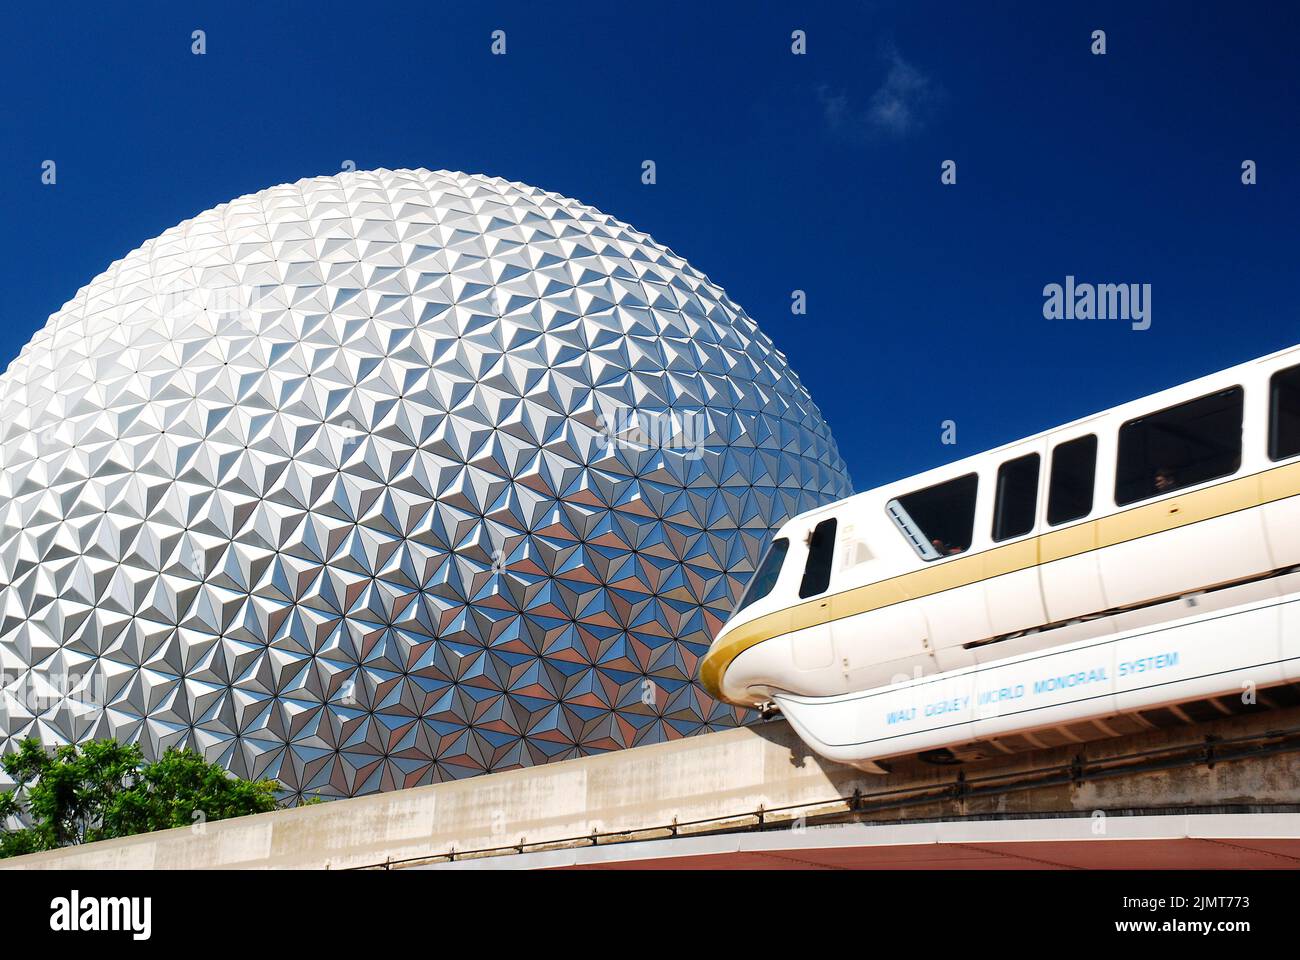 El monorraíl de AA viaja frente a la esfera de la nave espacial Tierra, un gran hito en el Centro Epcot de Walt Disney World en Orlando, Florida Foto de stock